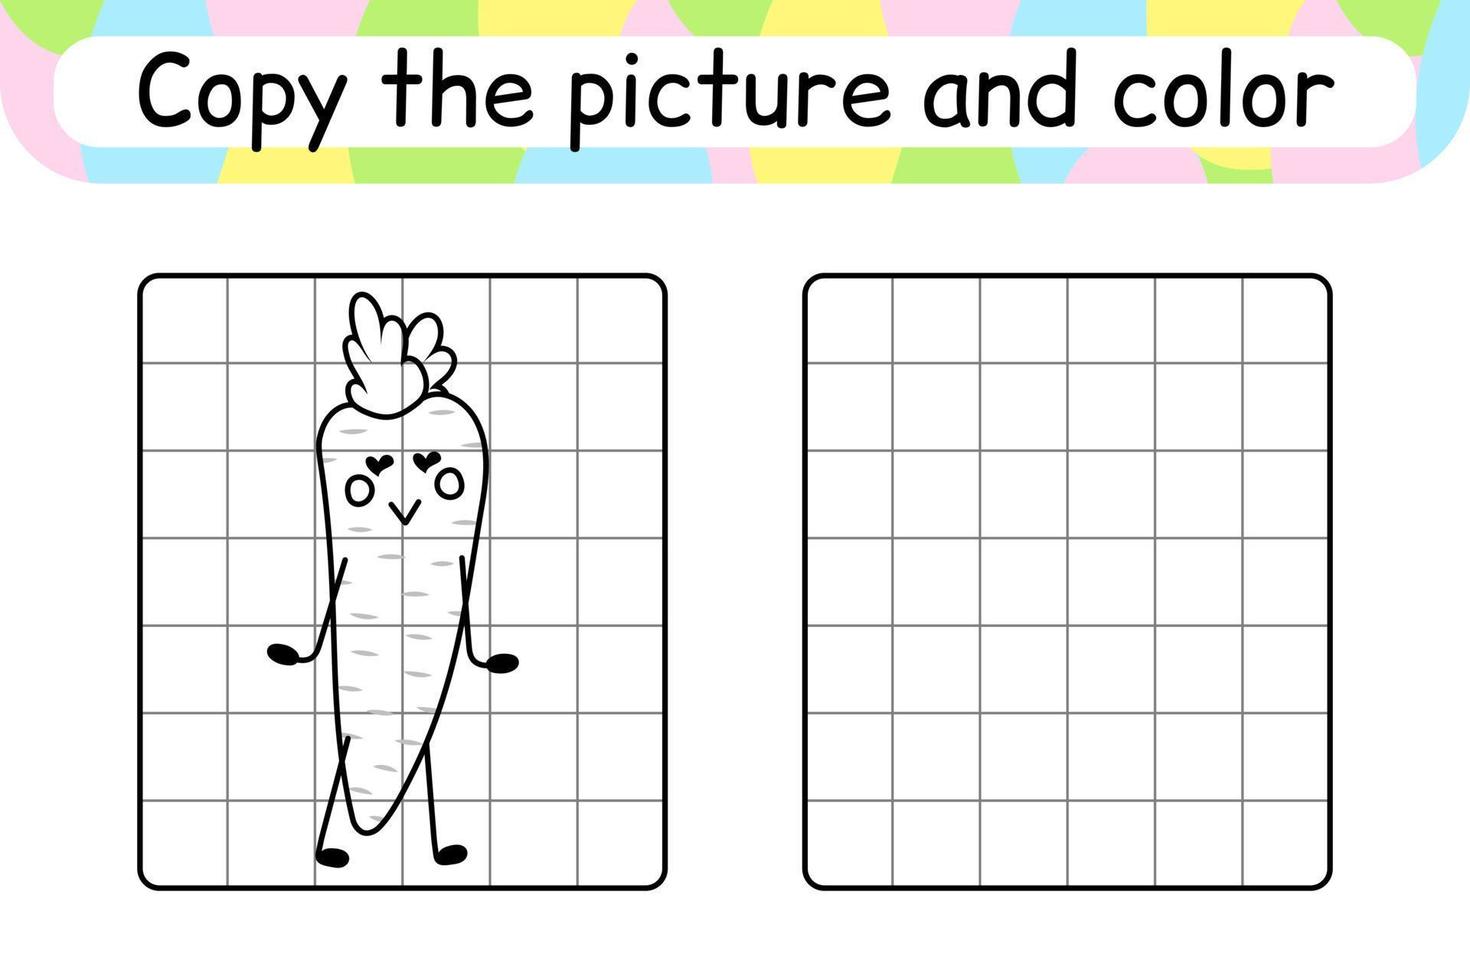 copia la imagen y colorea la zanahoria. completa la imagen terminar la imagen. libro de colorear. juego educativo de ejercicios de dibujo para niños vector